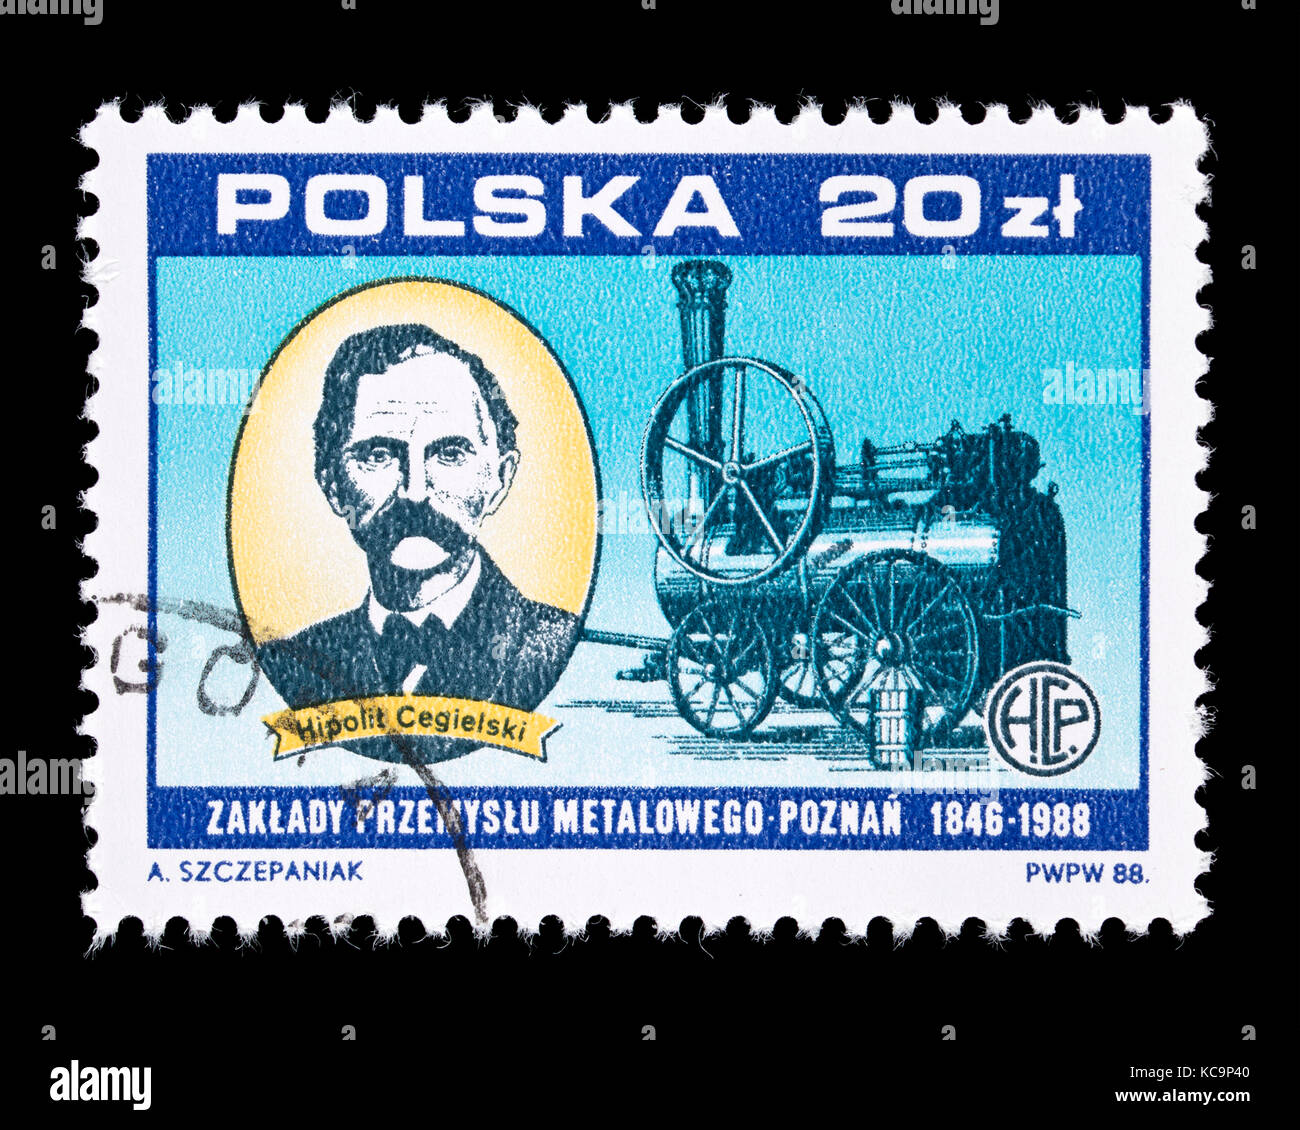 Sello de Polonia representando Gaspar Józef Hipolit Cegielski y una de las primeras máquinas de vapor, emitida por el 142 aniversario de la Poznan Metal Works. Foto de stock